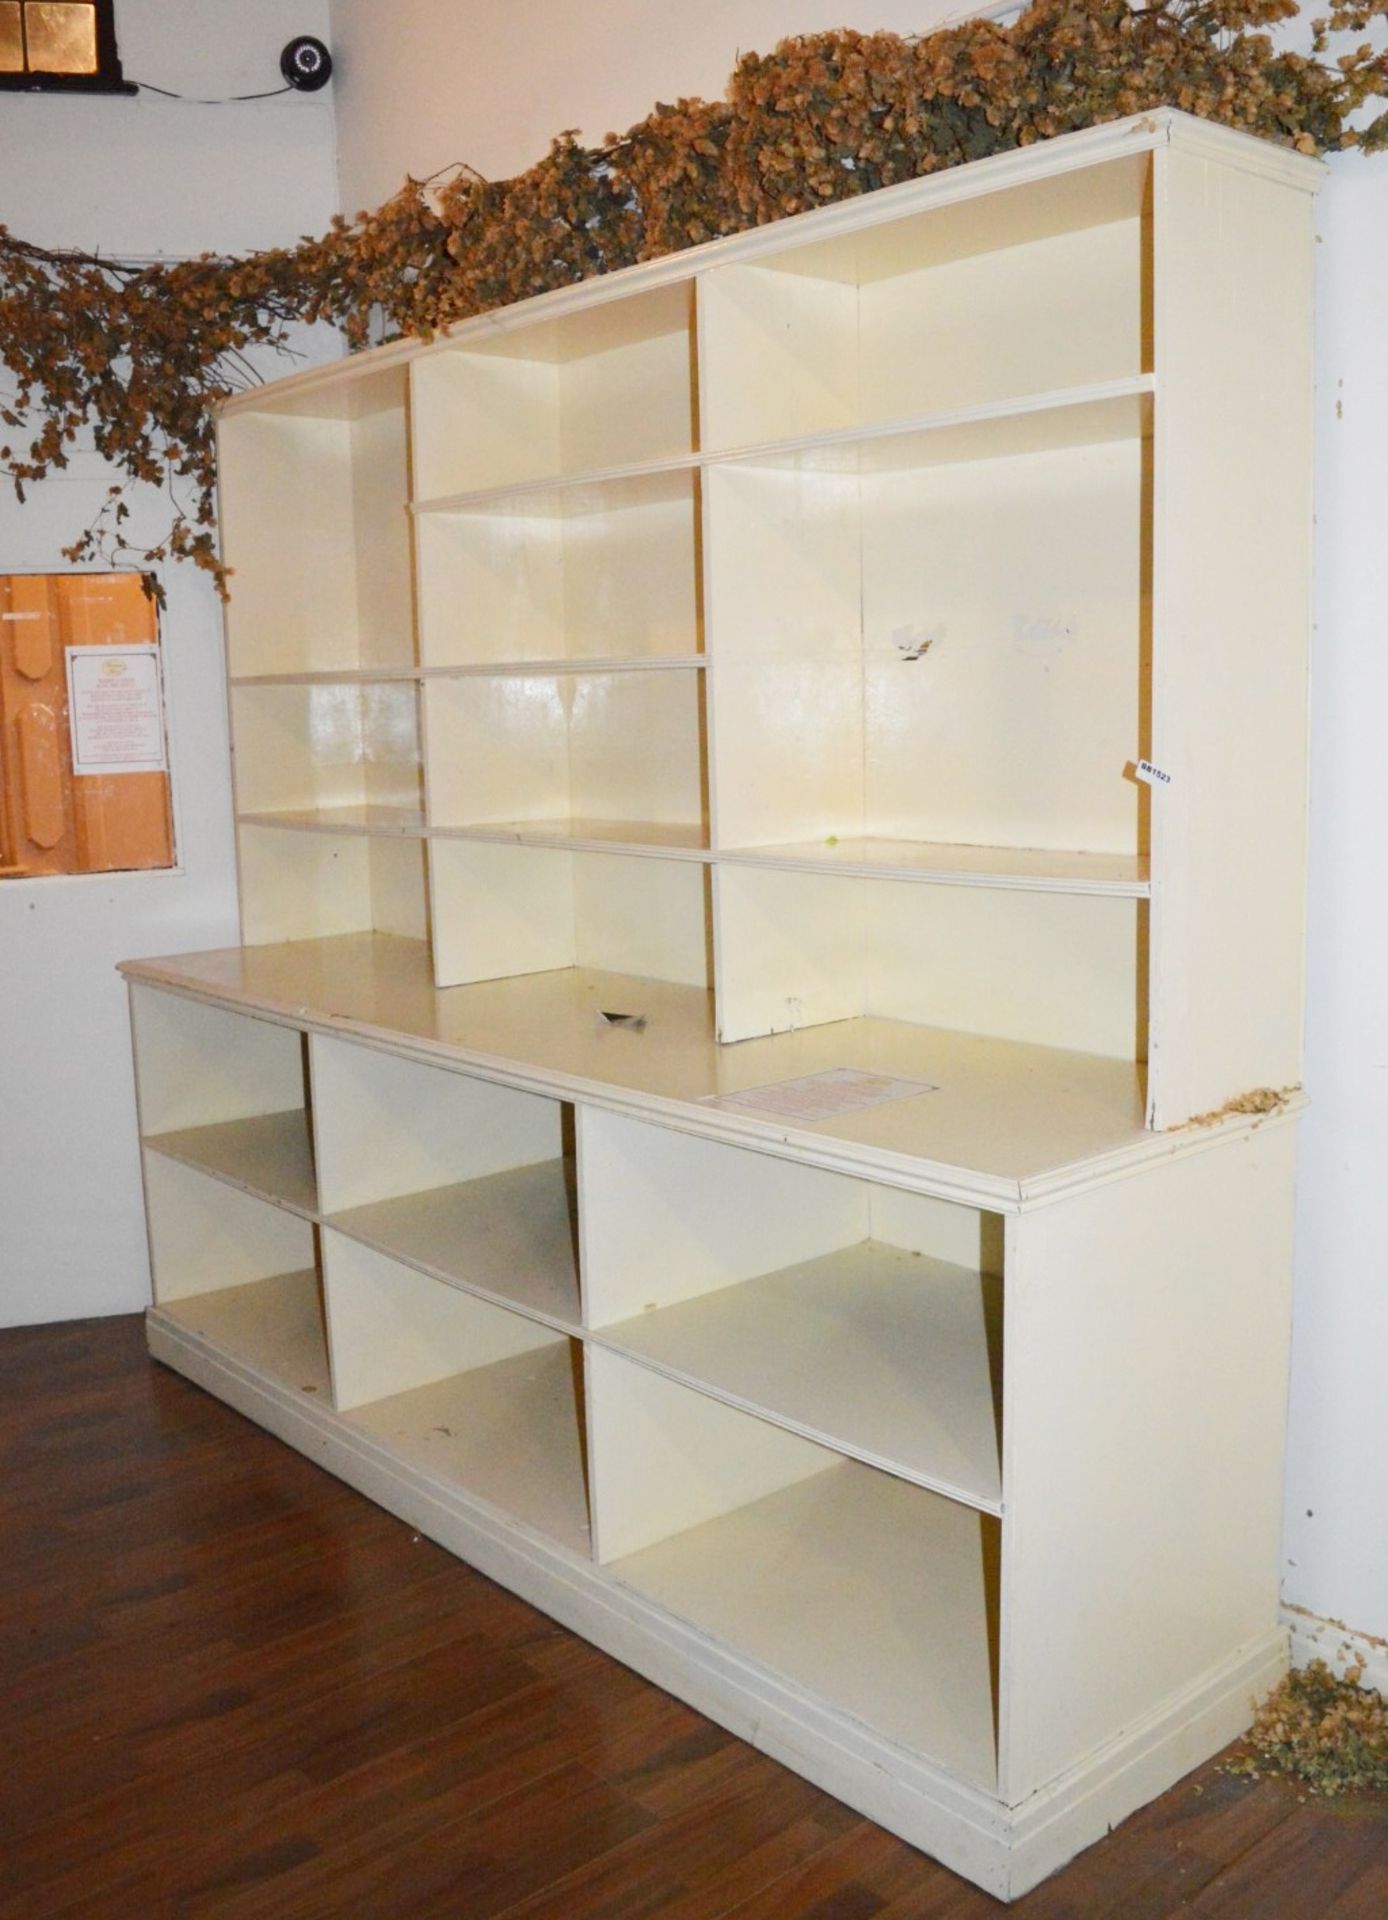 1 x Large Shelf Unit With Glass Shelves - H198 x W247 x D64 cms - Ref BB1523 GF - CL351 -